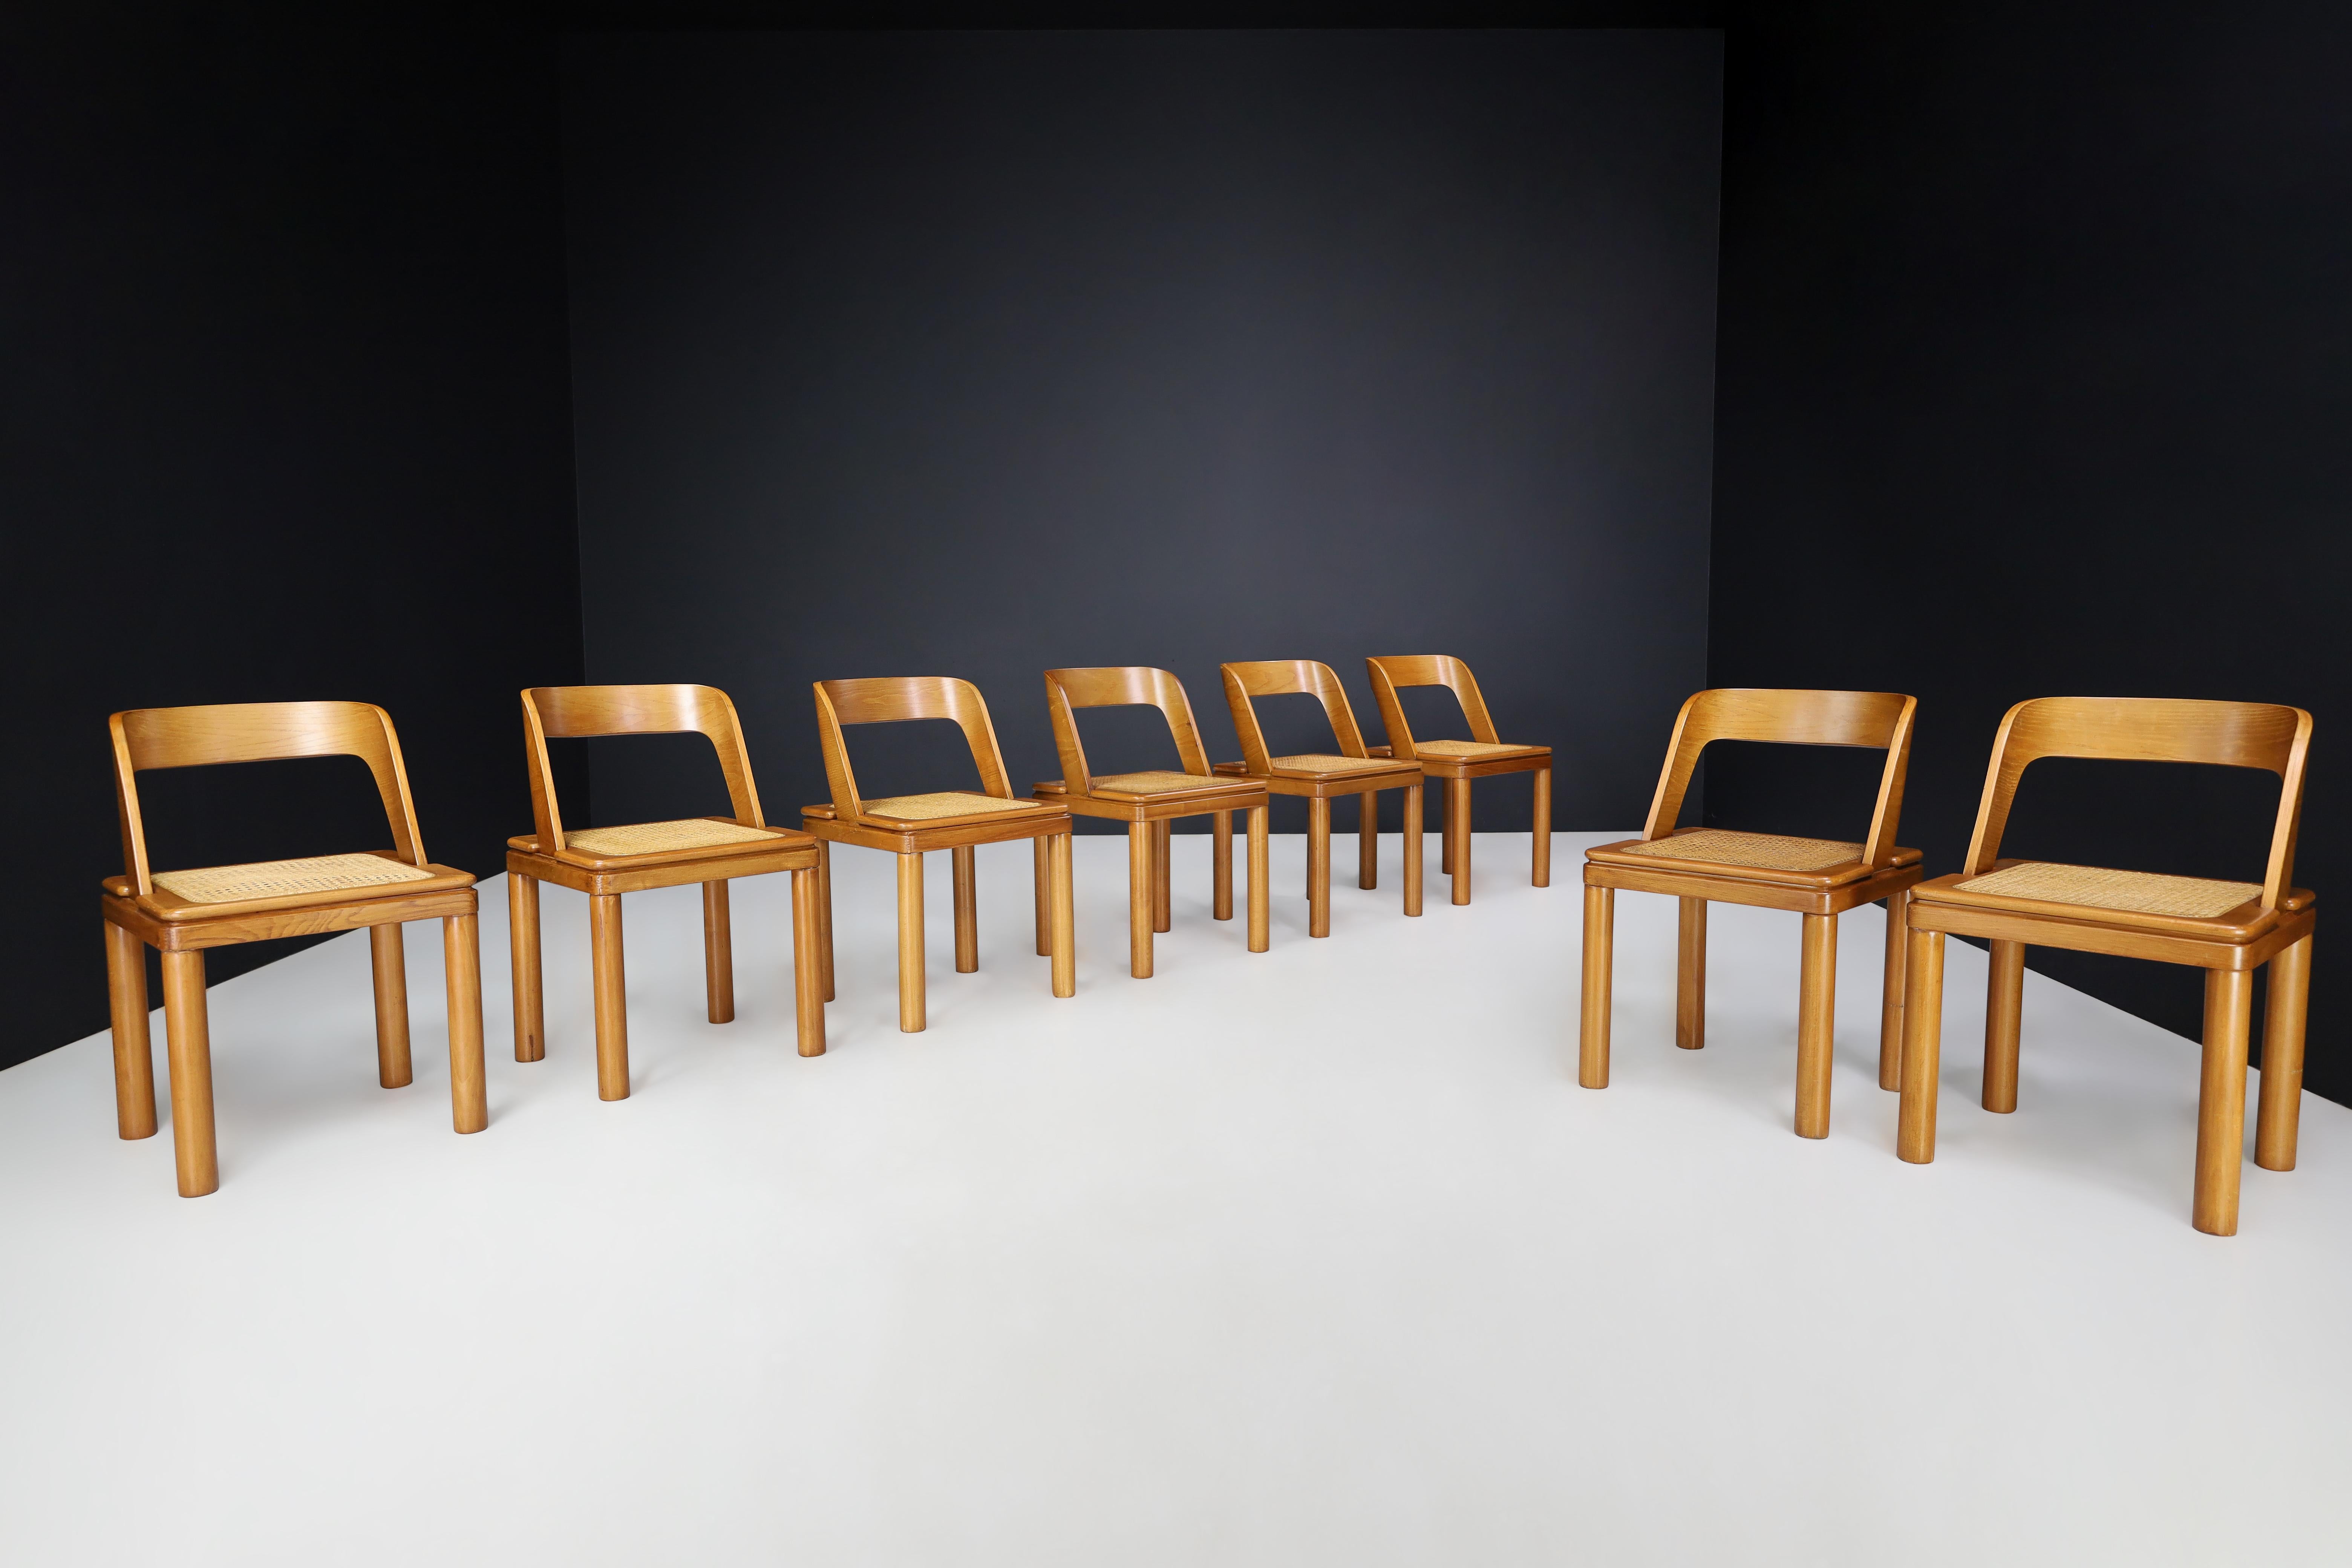 RB Rossana Satz von acht Esszimmerstühlen aus Rohr und Esche, Italien 1960er Jahre

Diese acht RB Rossana Esszimmerstühle wurden in den 1960er Jahren in Italien hergestellt. Die Stühle haben ein schlichtes, modernes Design mit einer offenen